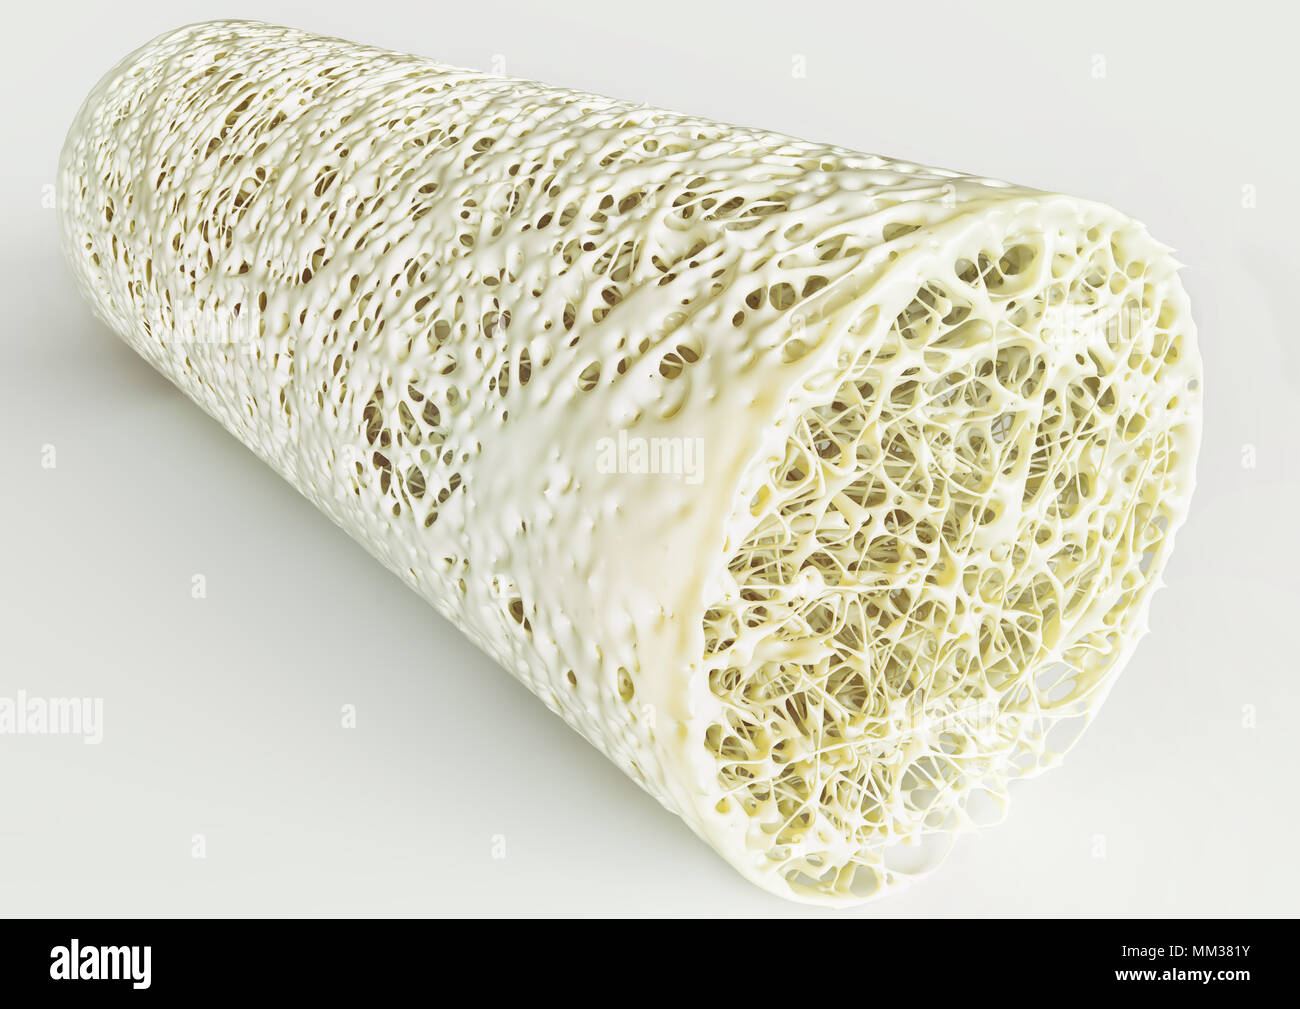 Querschnitt einer fortgeschrittenen Osteoporose - hohe Details - Stufe 4 - 3D-Rendering Stockfoto